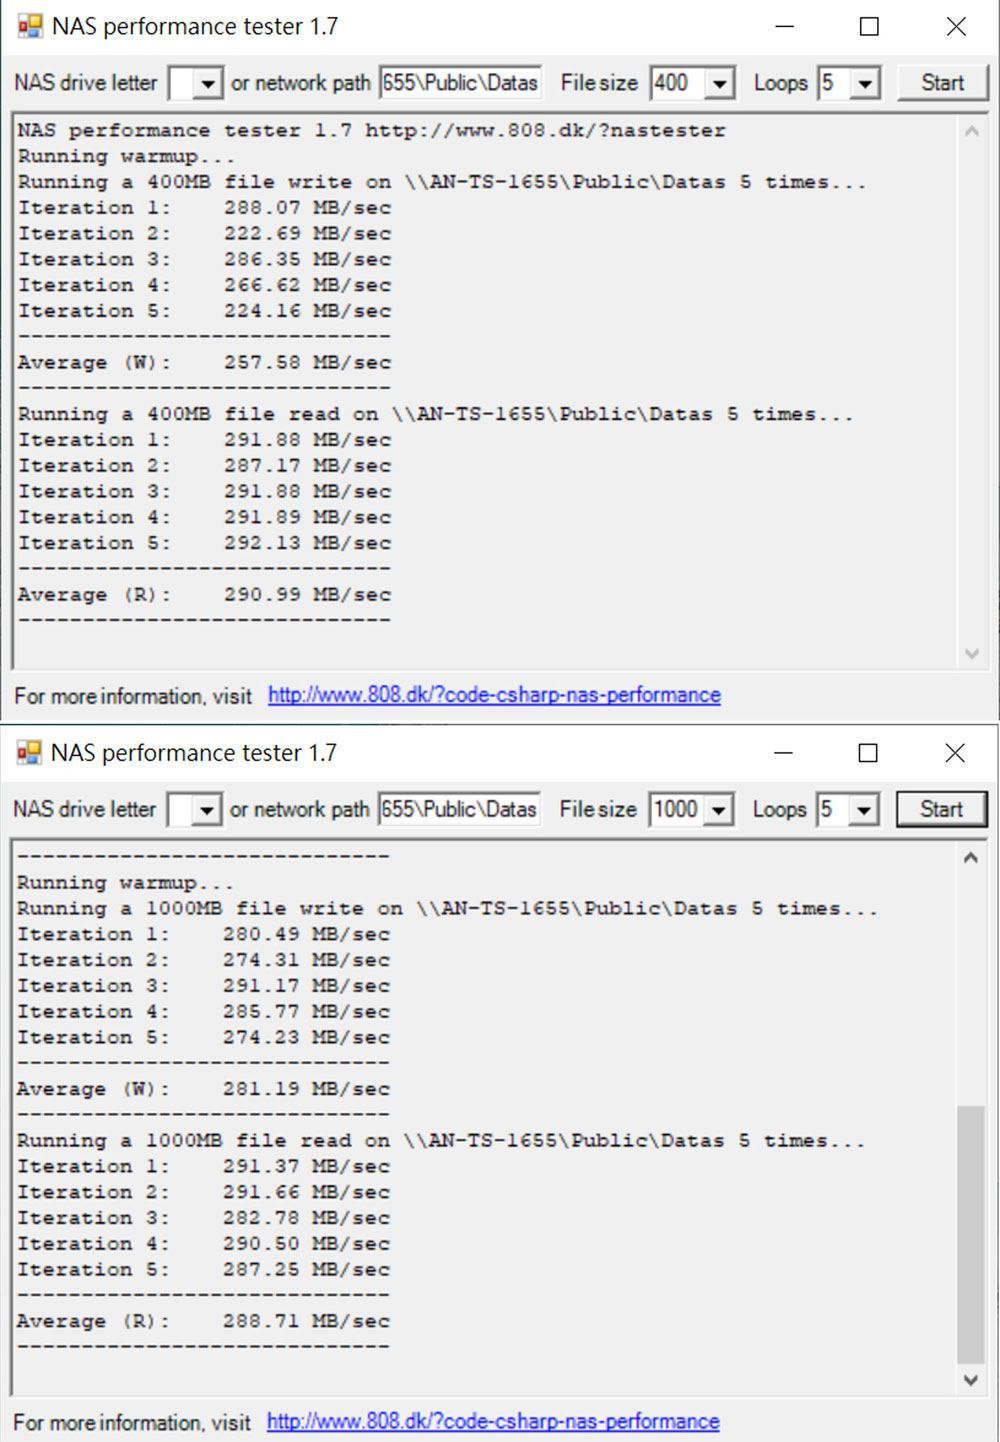 透過 NAS performance Tester 進行檔案傳輸實測，將測試路徑指向安裝 Toshiba MG10 20TB 版的 NQNAP TS-1655，圖上將檔案尺寸定為 400，圖下將檔案尺寸定為 1000，分別獲得平均 290.00 MB/s 與 288.71 MB/s 的傳輸速度成績。